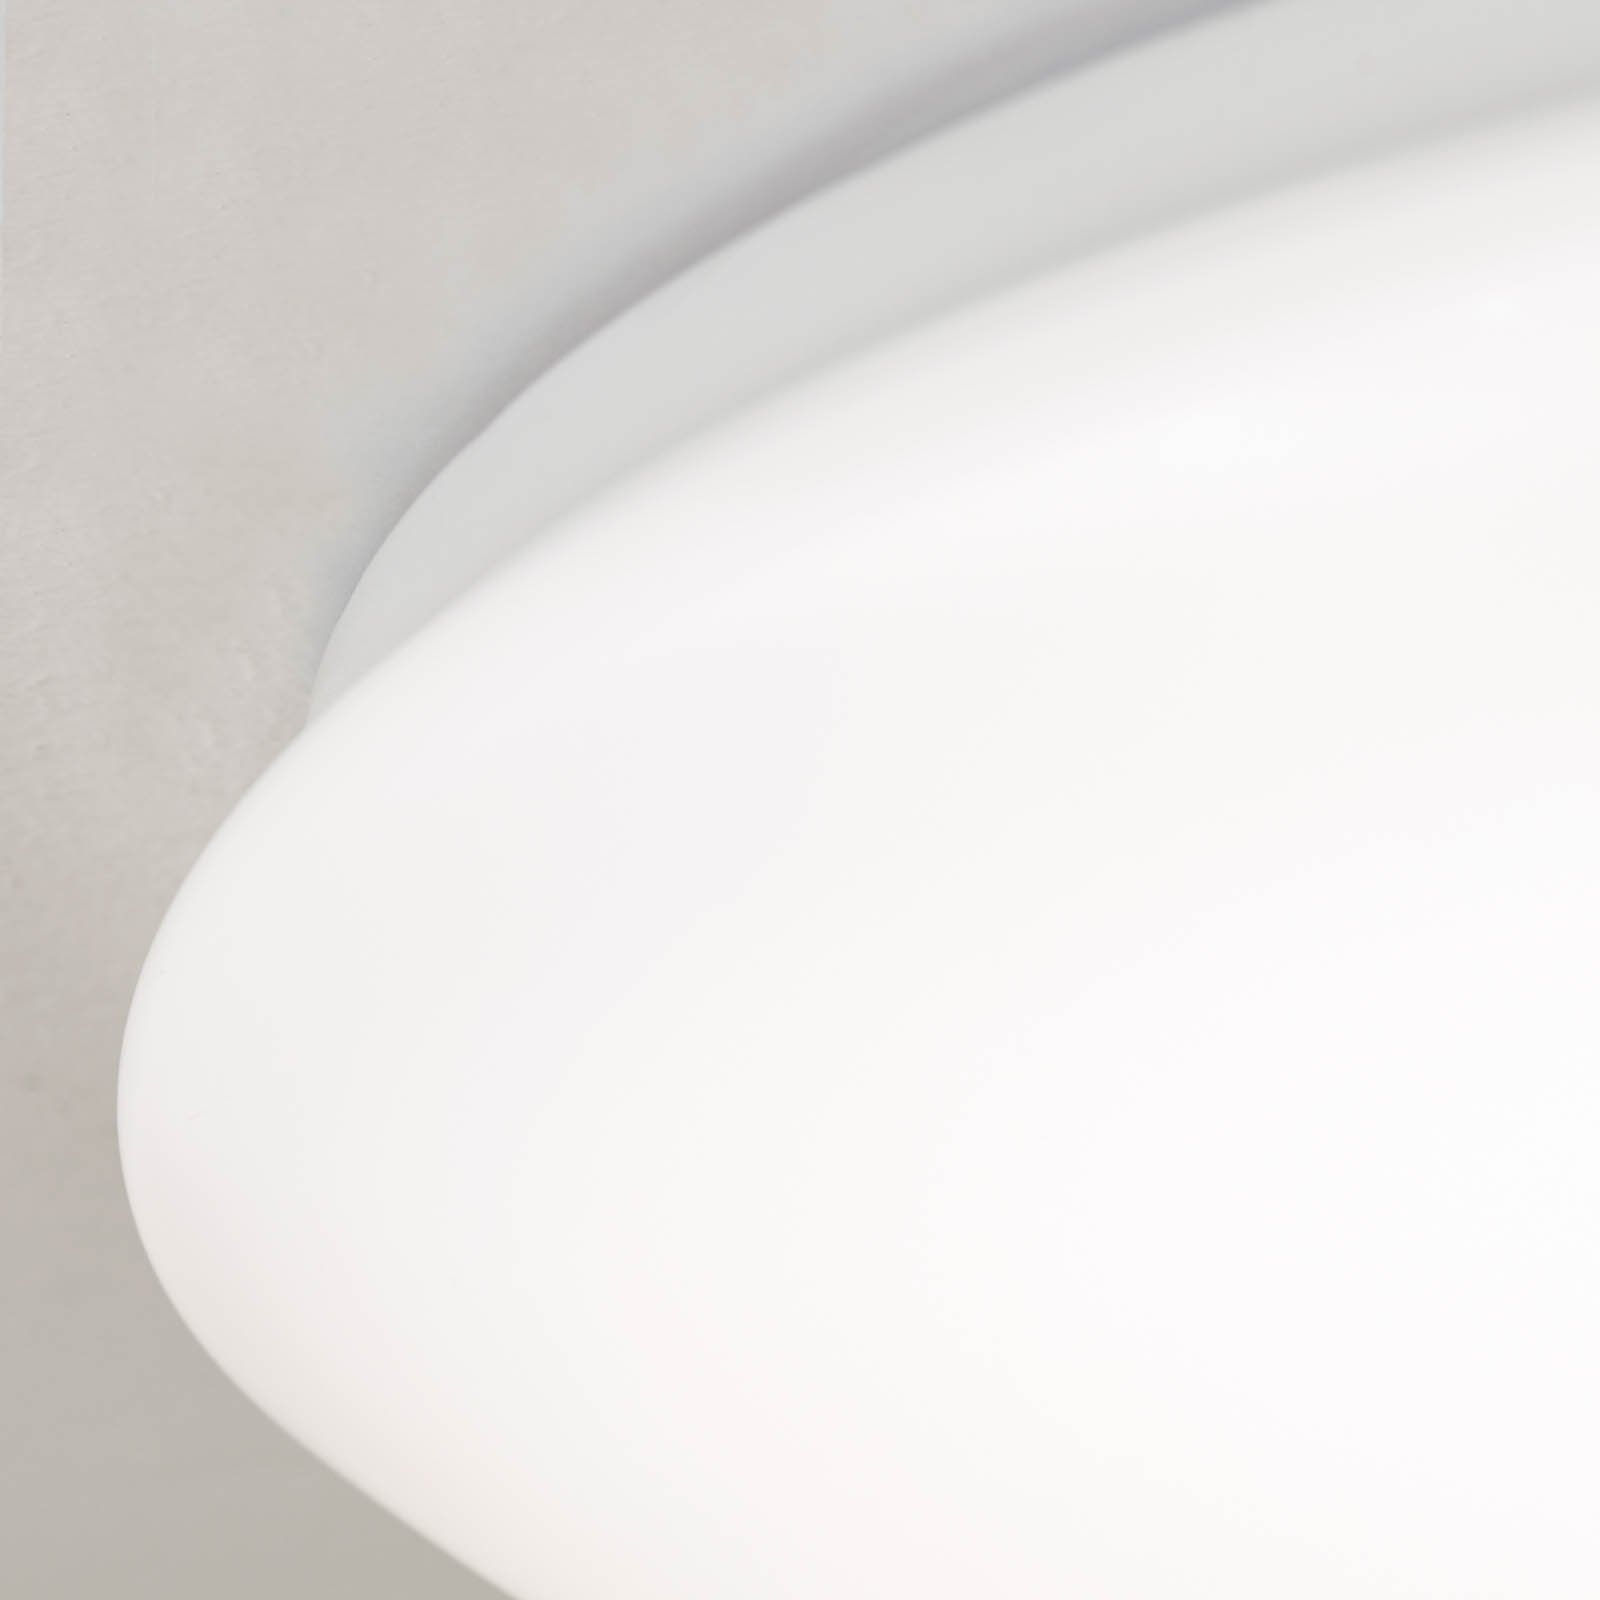 LED stropné svietidlo Nedo zakrivené, Ø 33 cm